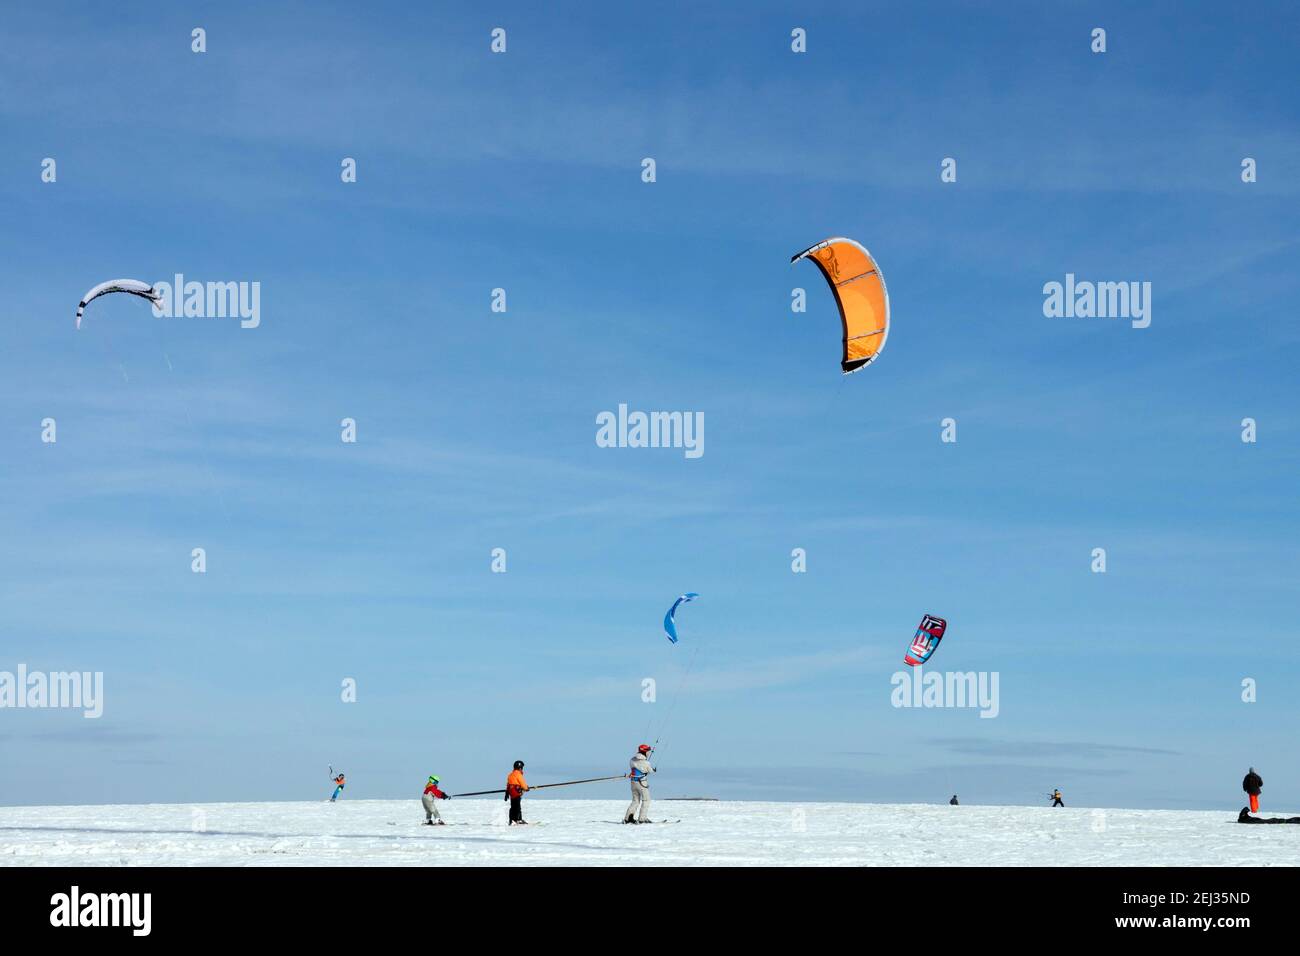 Famiglia kite sci Sport invernali snowkiting stile di vita moderno sano, inverno blu cielo Foto Stock